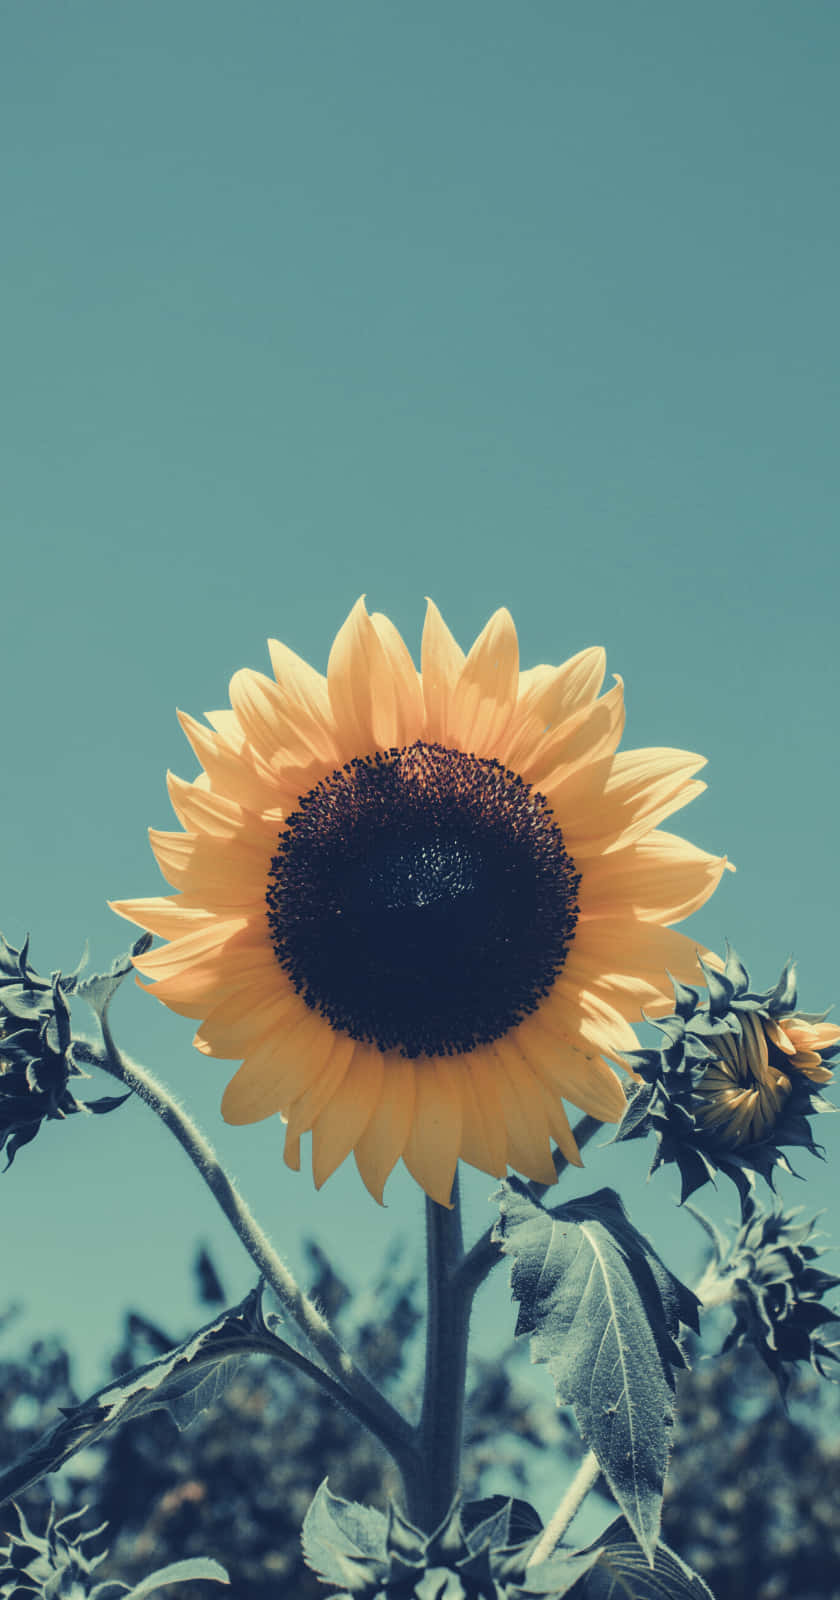 Erfrischensie Das Aussehen Ihres Telefons Mit Ästhetischen Sonnenblumenhintergründen Für Das Iphone. Wallpaper